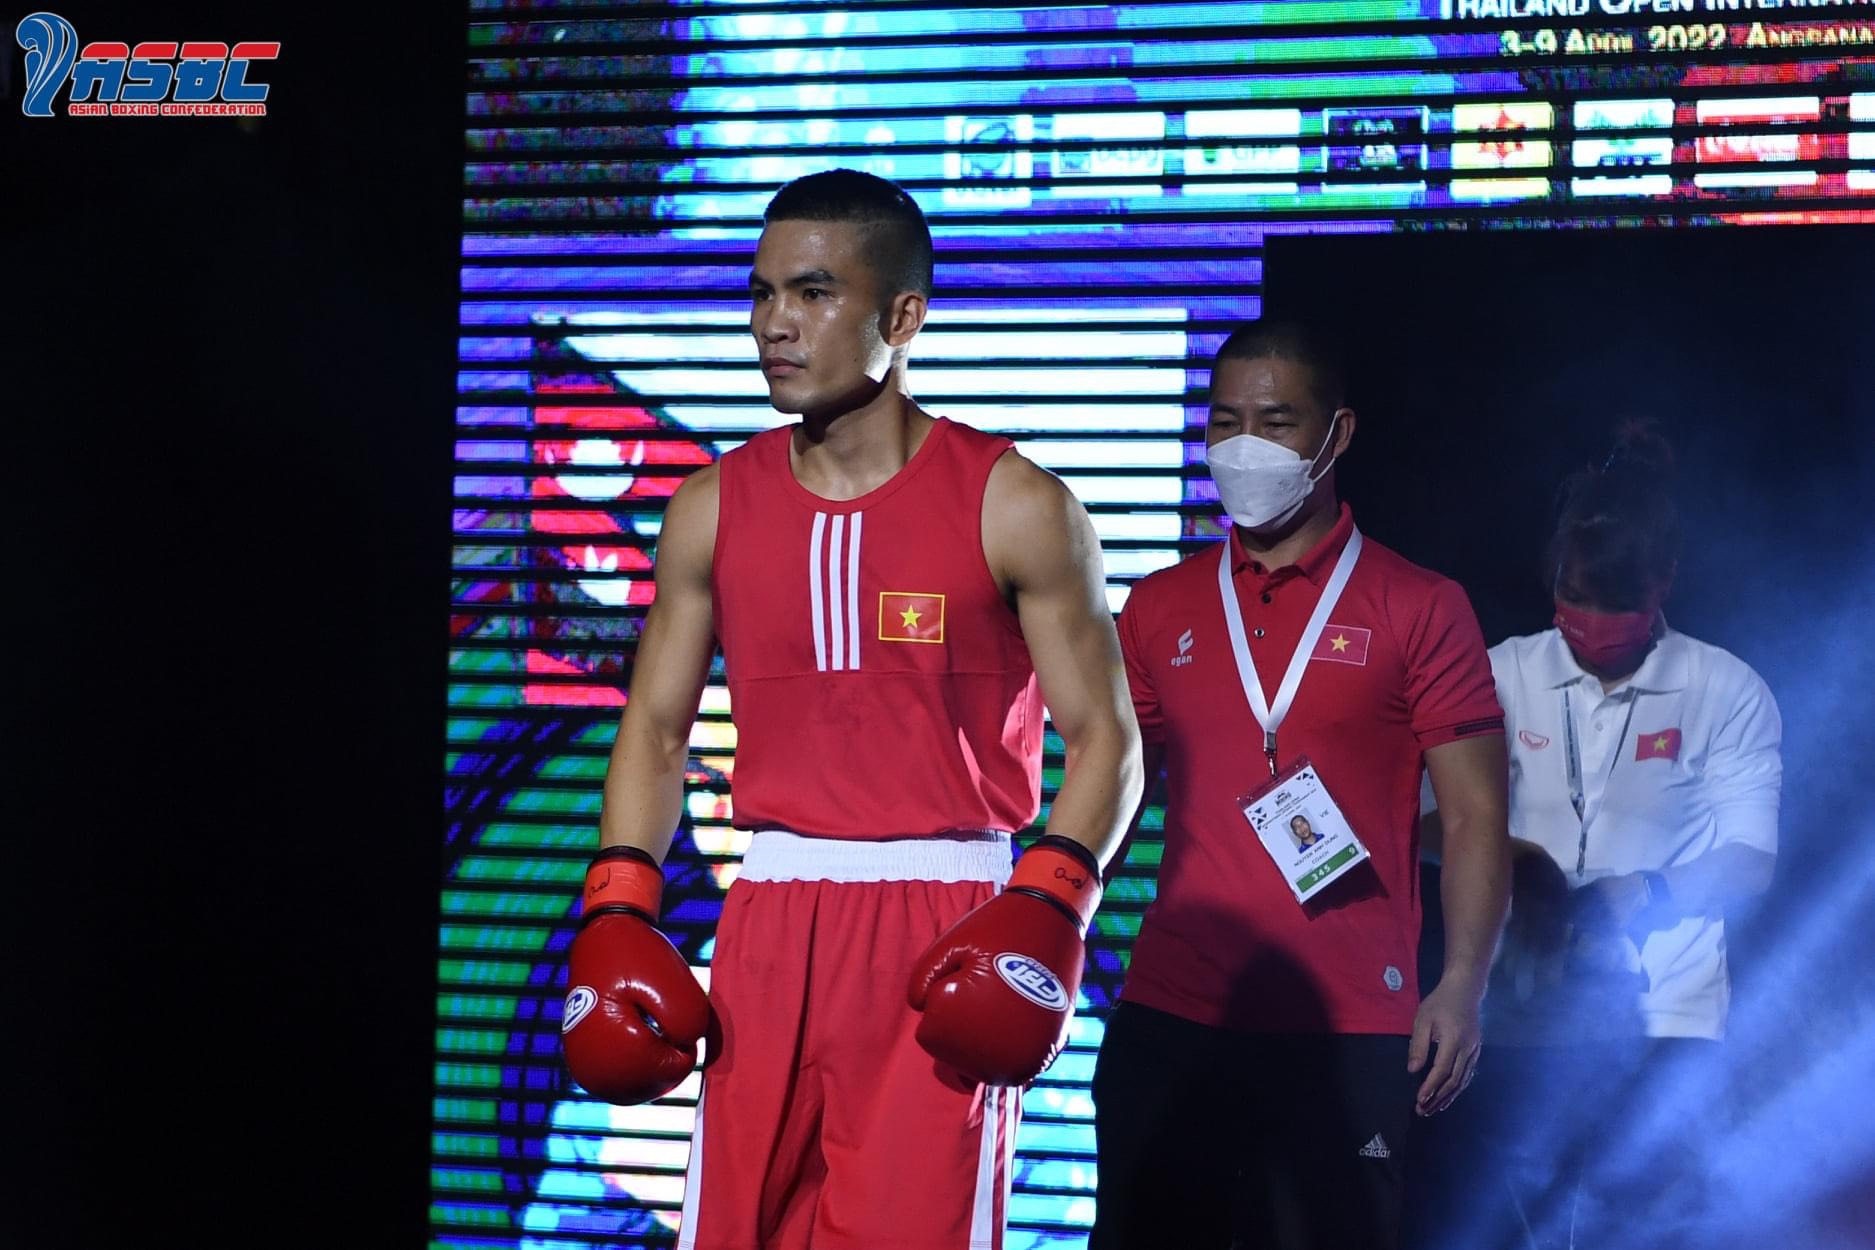 HLV Nguyễn Anh Dũng: Mong Boxing Việt Nam có thêm nhiều chiến thắng ở Thái Lan Mở rộng - Ảnh 1